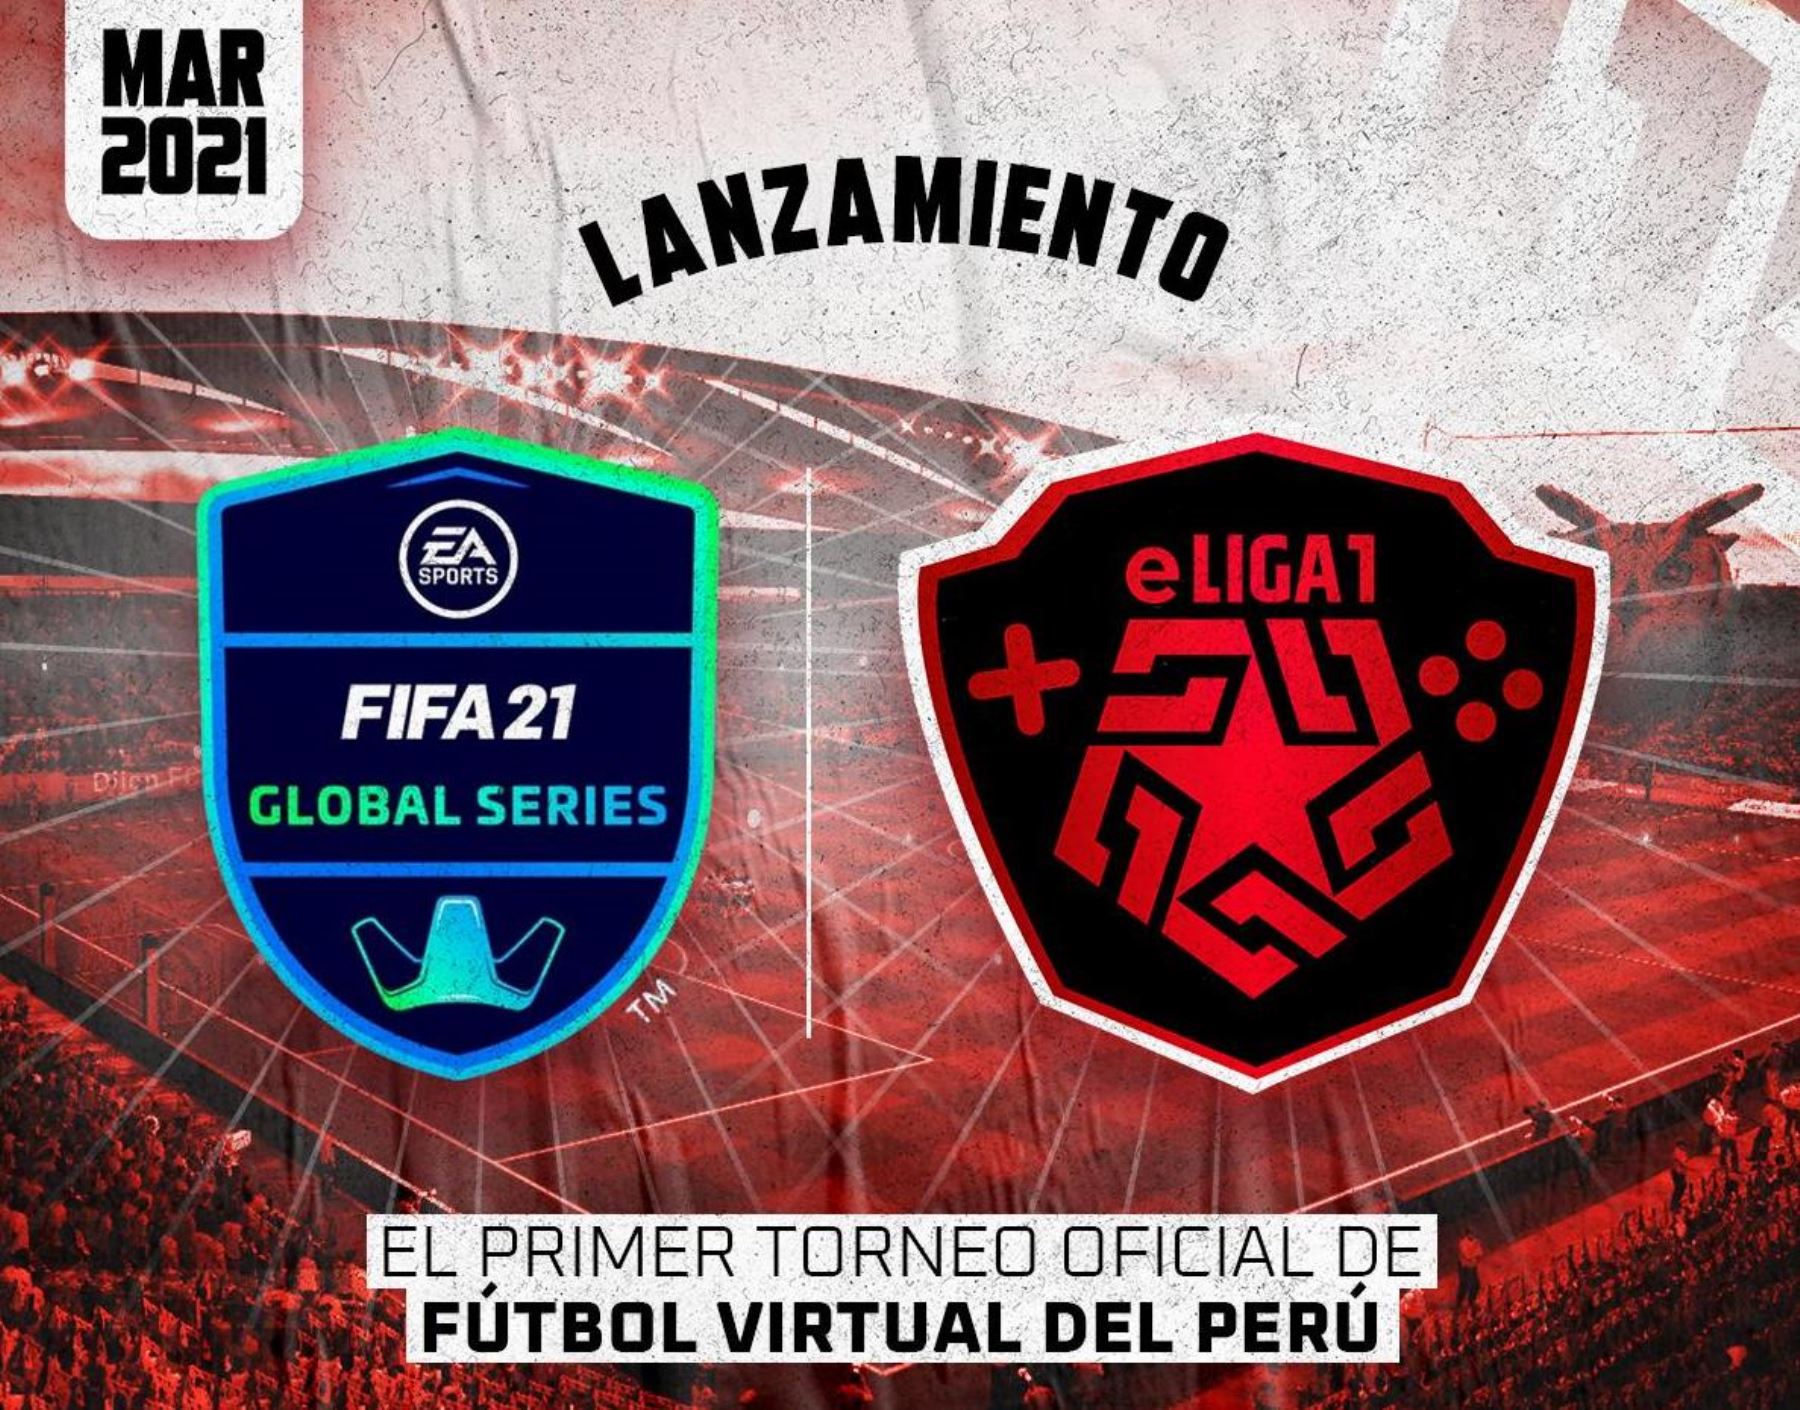 La eLiga1 es el primer torneo oficial de fútbol virtual en el Perú que forma parte de EA SPORTS™ FIFA Global Series